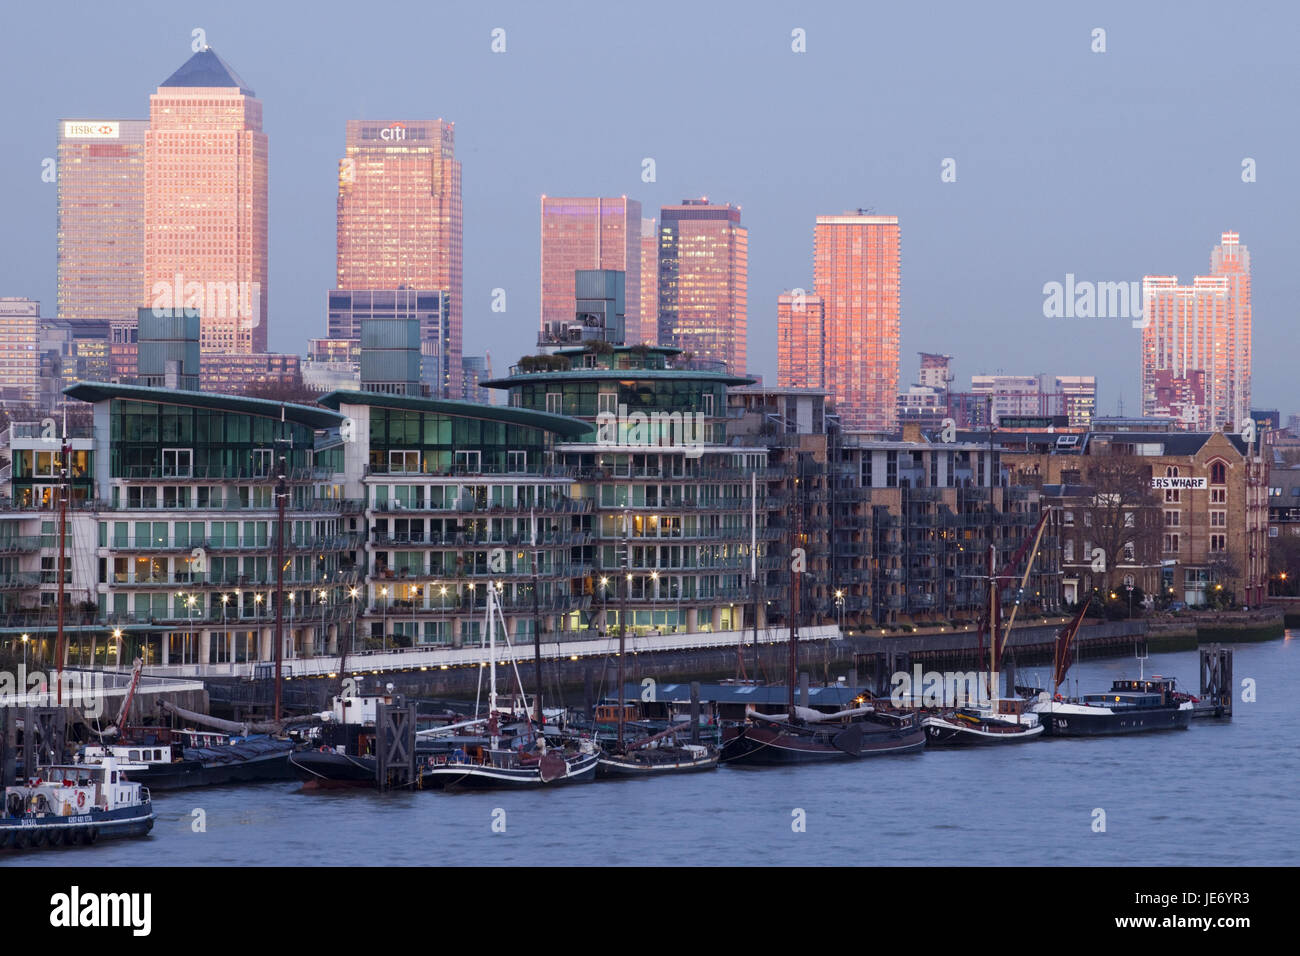 L'Angleterre, Londres, dock pays, Canary Wharf, port, bateaux, UK, FR, partie de la ville, les maisons, les habitations, les immeubles de bureaux, des entreprises, du quartier financier, l'architecture, de la rivière, la Tamise, le tourisme, Banque D'Images